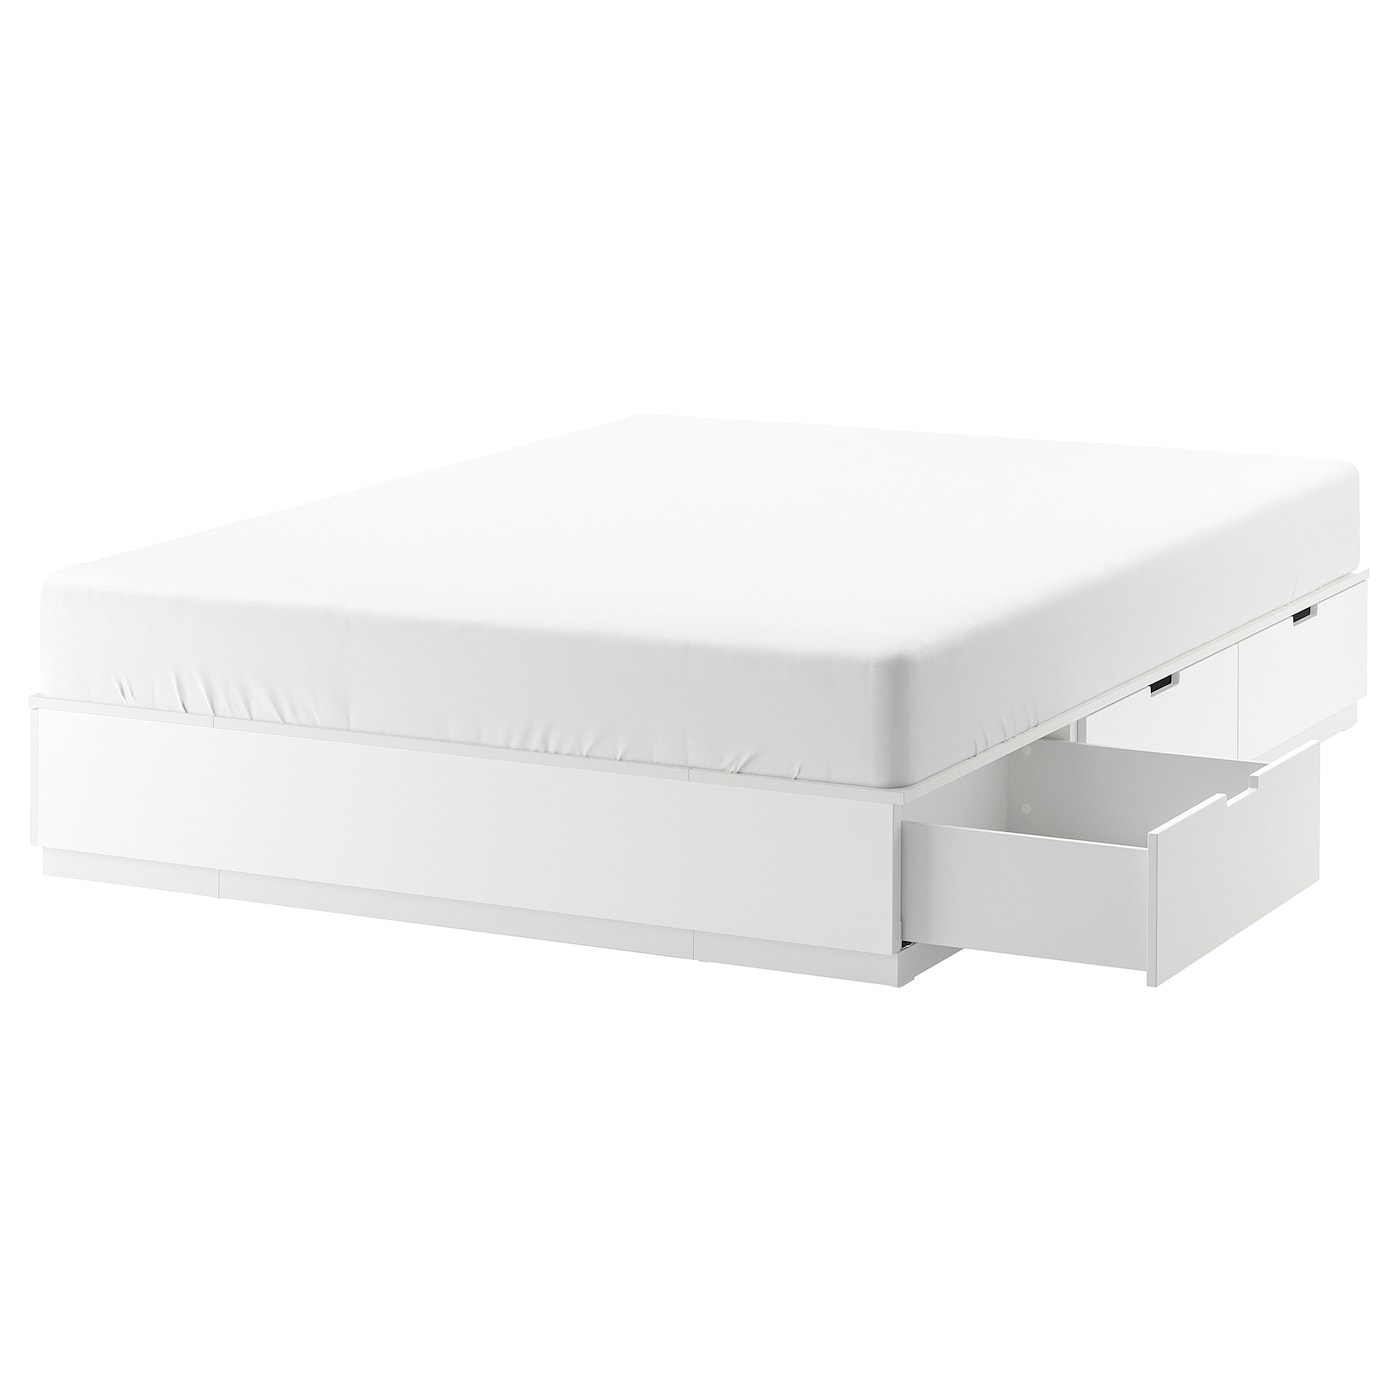 Каркас кровати с выдвижными ящиками - IKEA NORDLI, 200х140 см, белый, НОРДЛИ ИКЕА